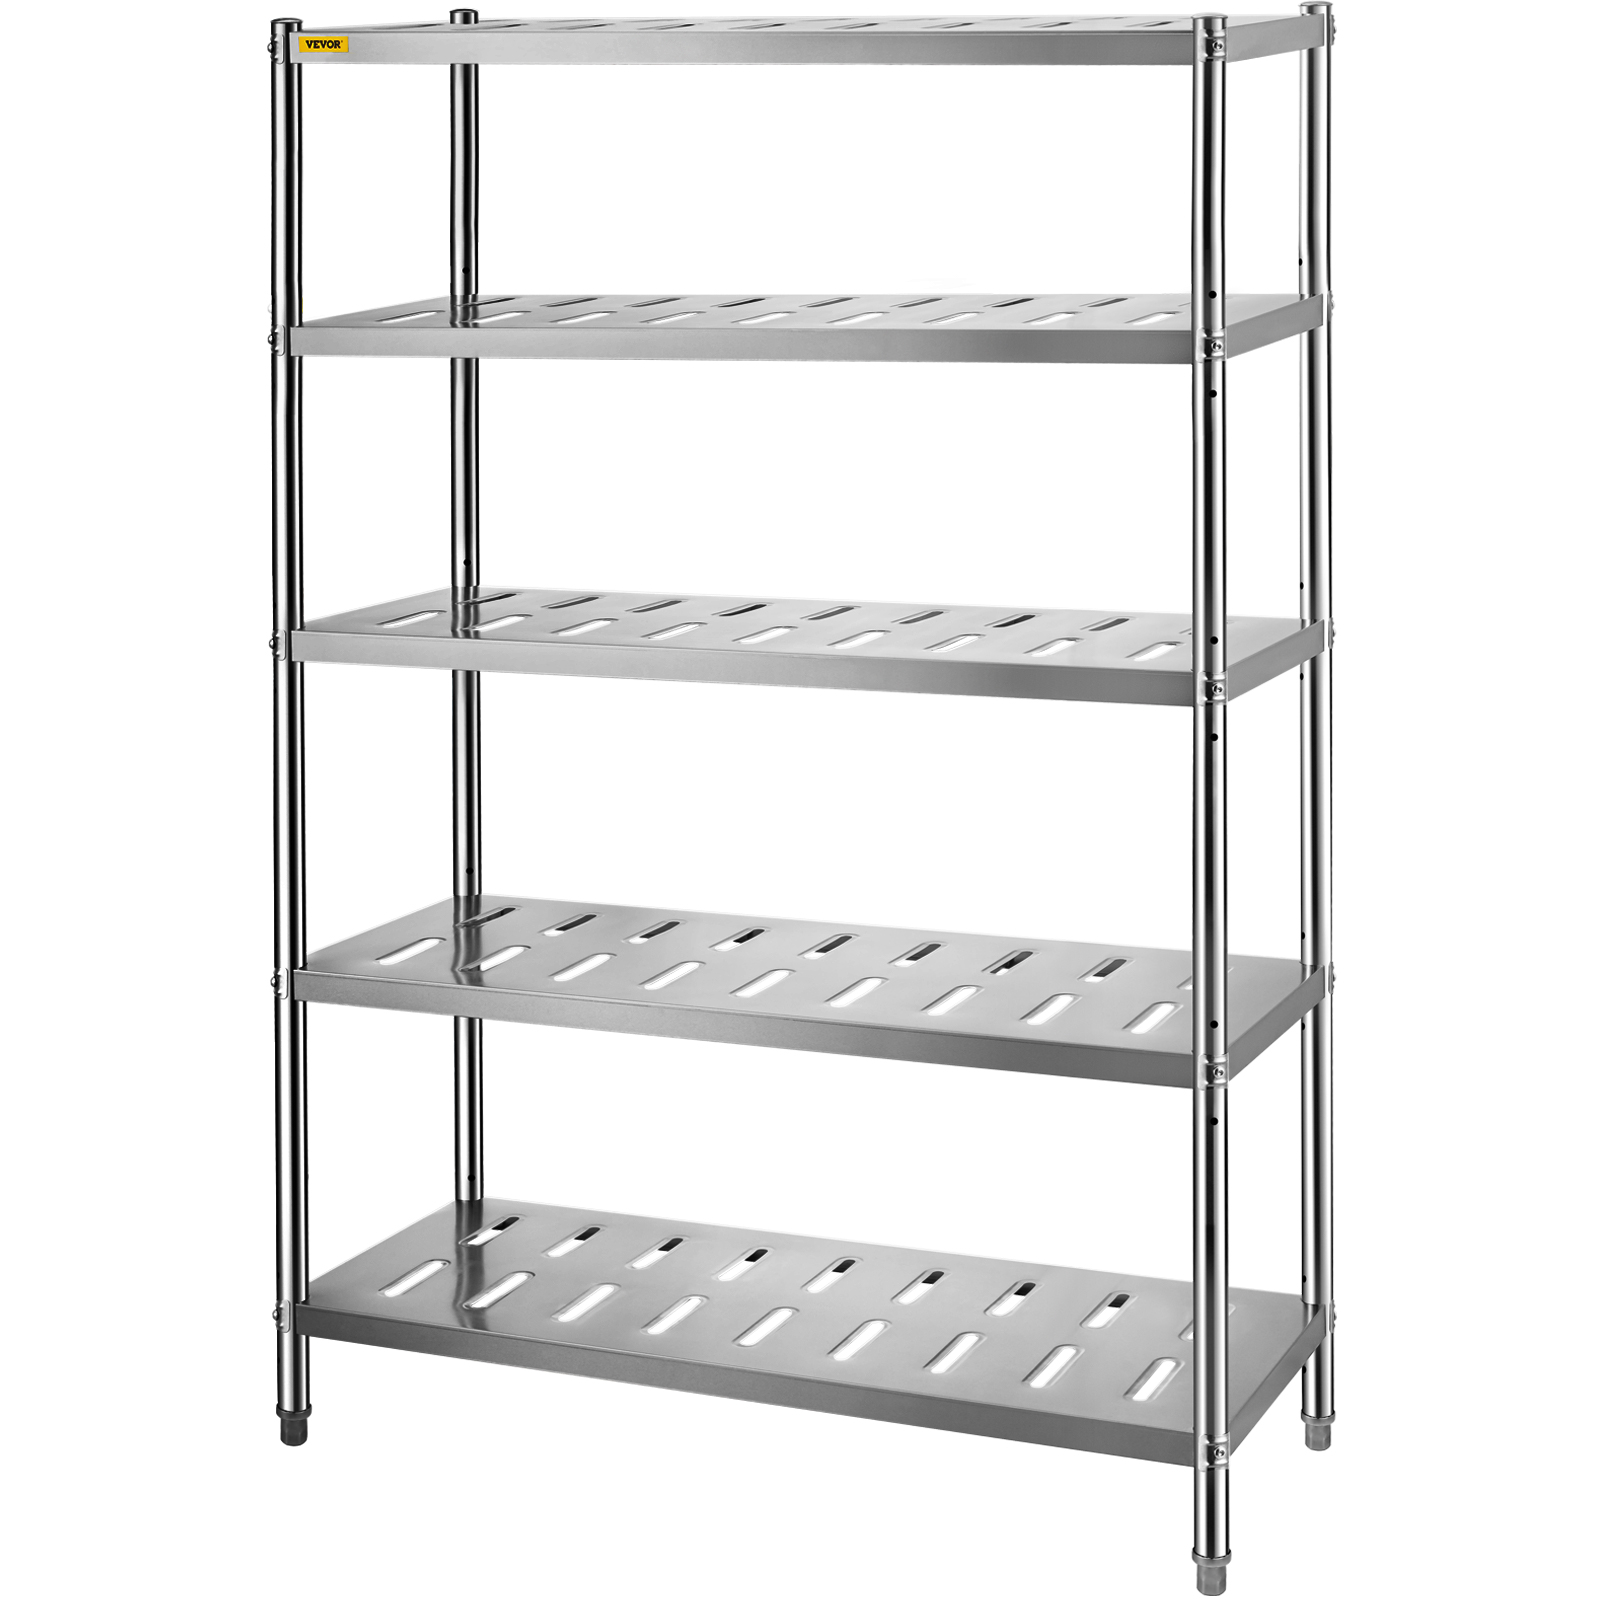 Vevor Garage Shelf 5 Level Storage Adjustable Shelves Unit 47.2x17.7x70.9in от Vevor Many GEOs